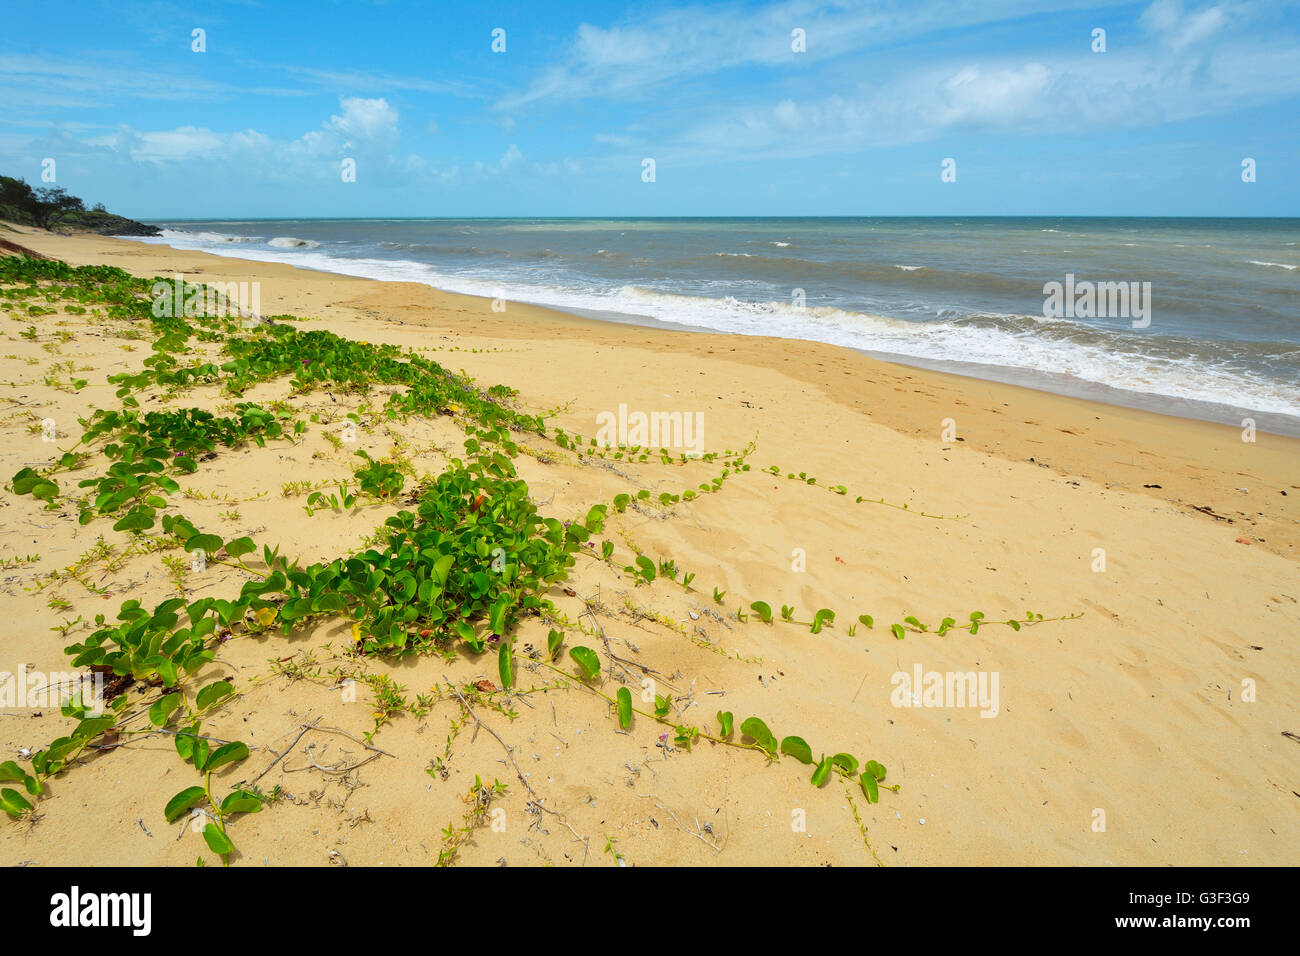 Con la playa de dunas de arena, la autopista Captain Cook, Queensland, Australia Foto de stock